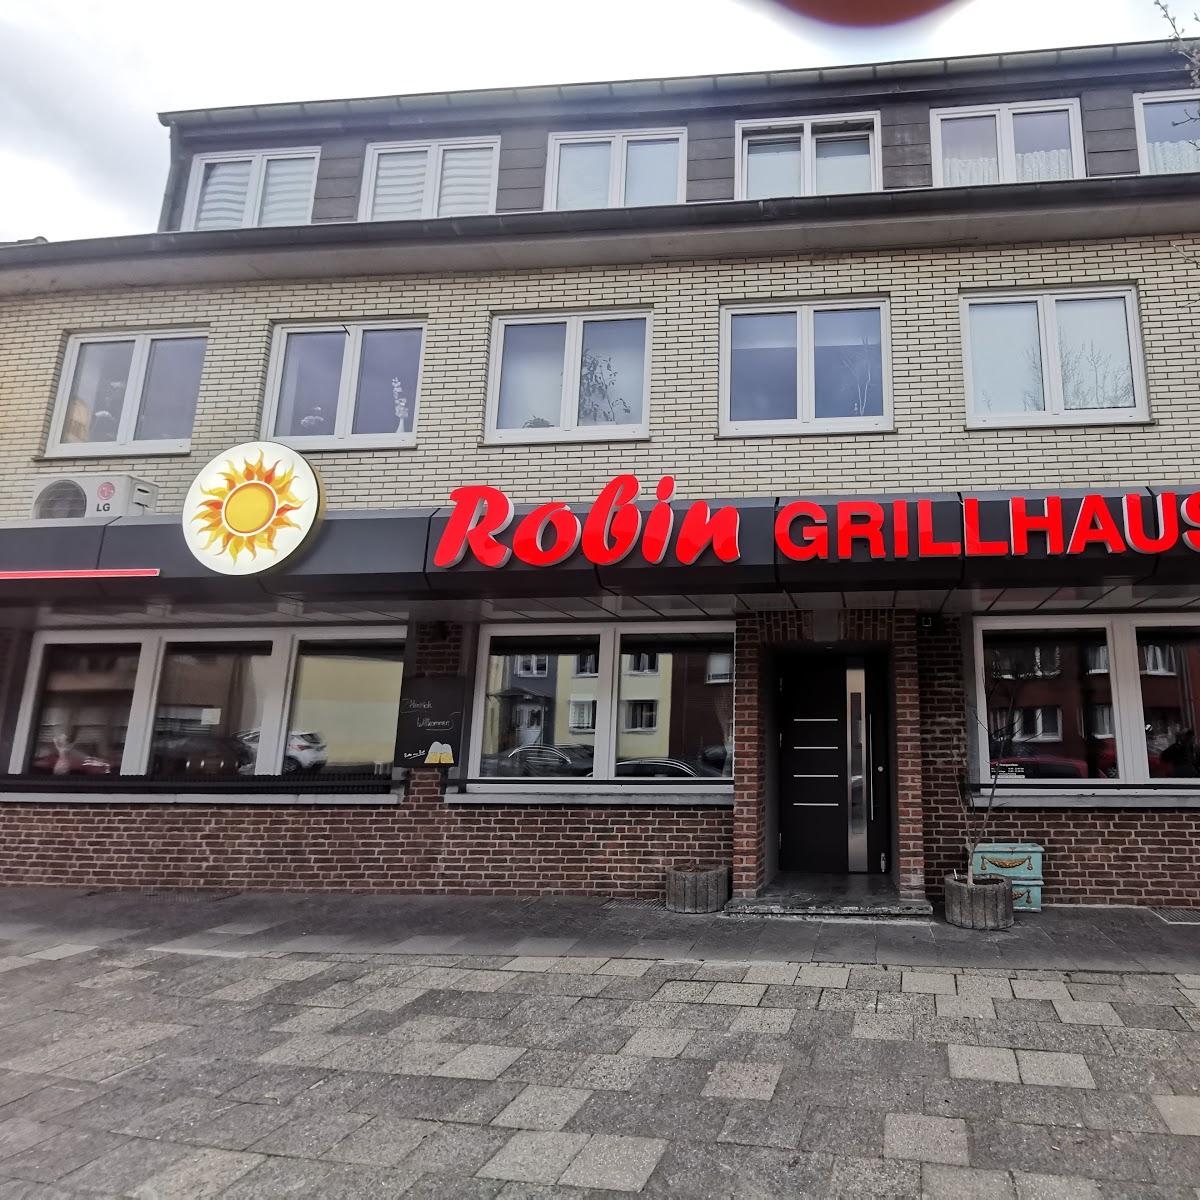 Restaurant "Robin Grillhaus Übach Palenberg" in Übach-Palenberg